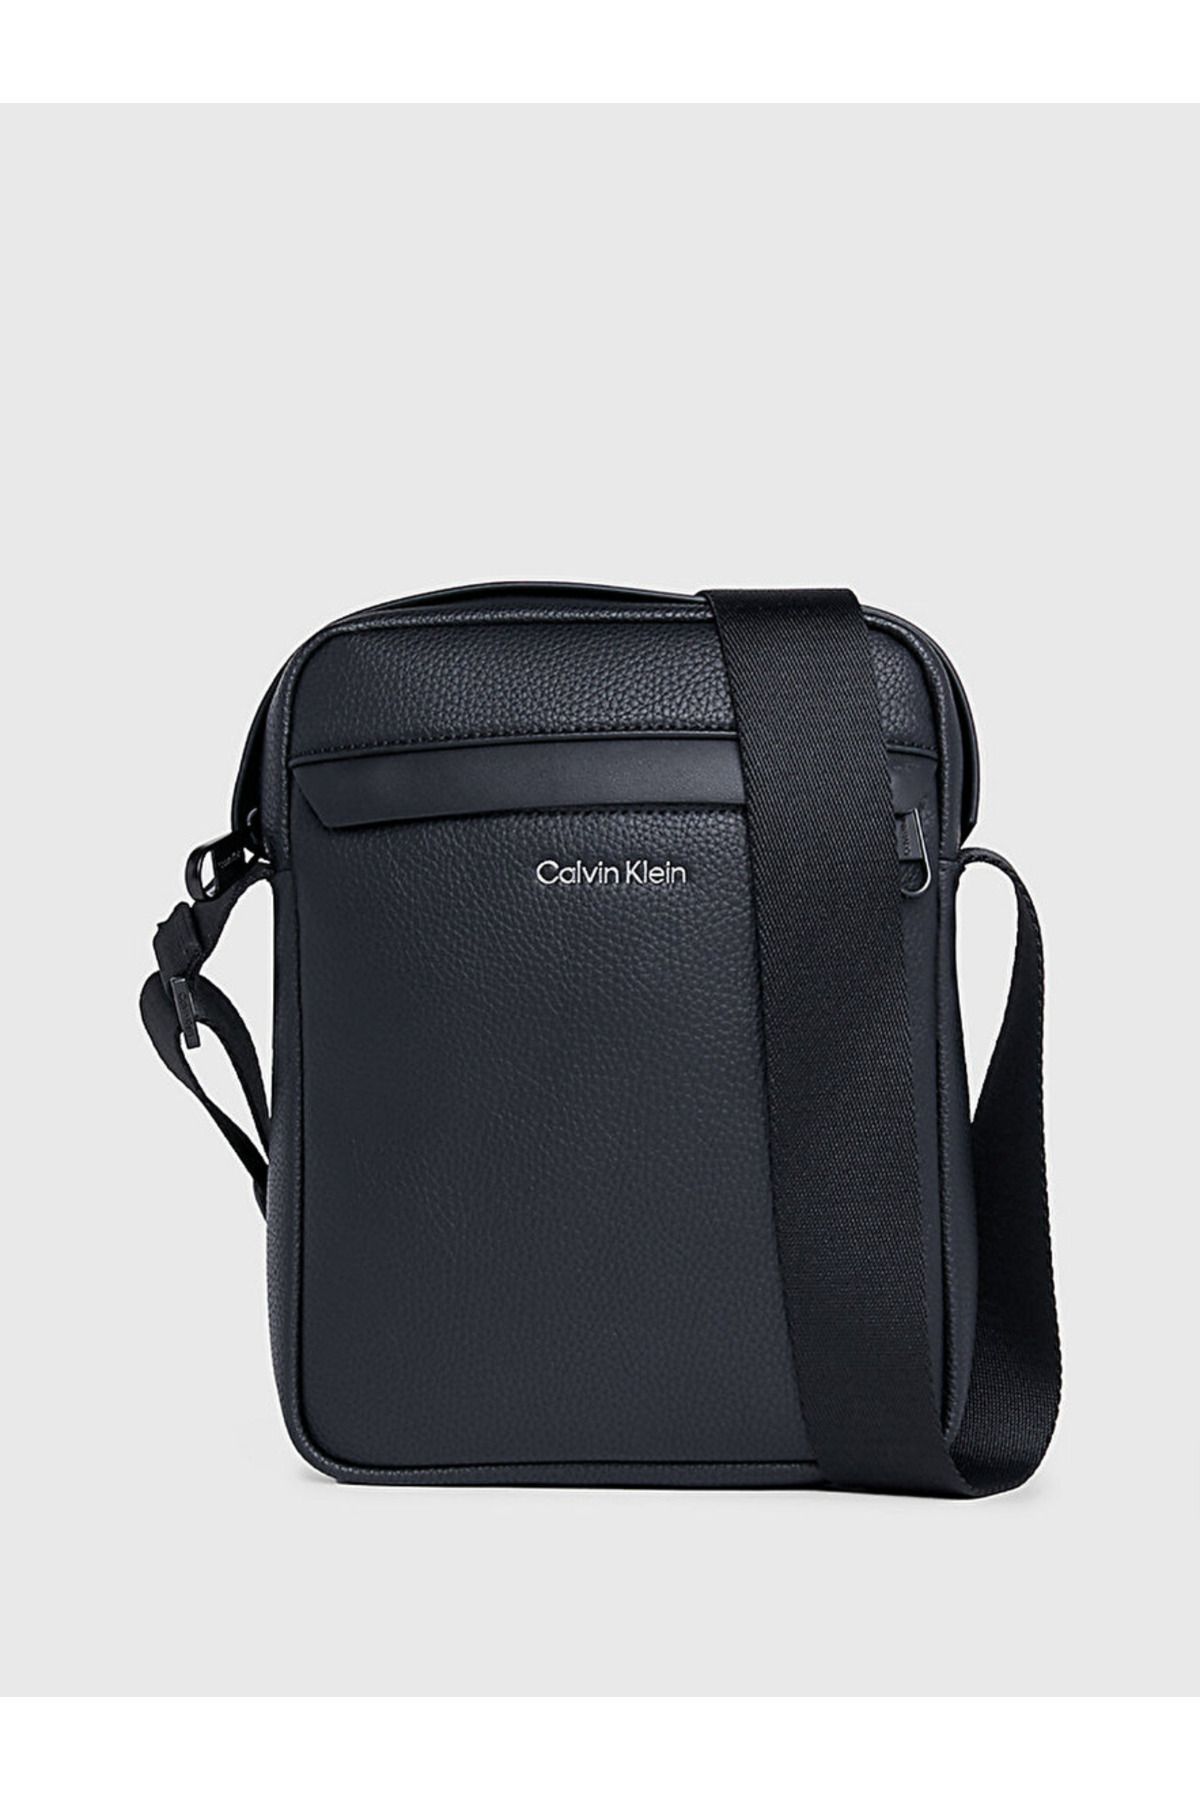 Calvin Klein Reporter Bag